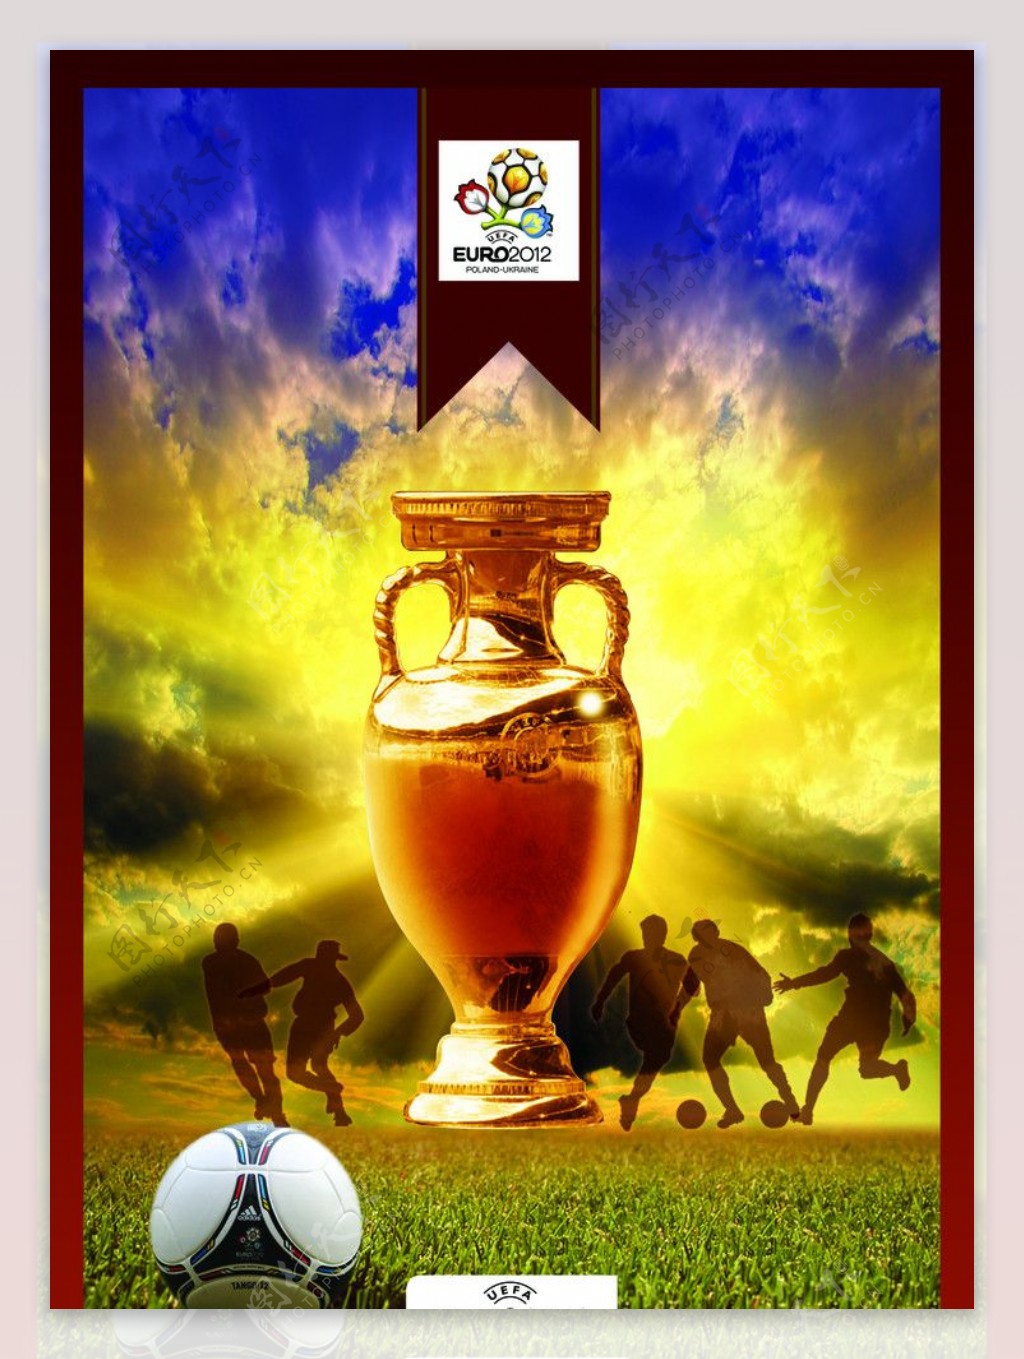 2012年欧洲杯足球赛主题海报图片